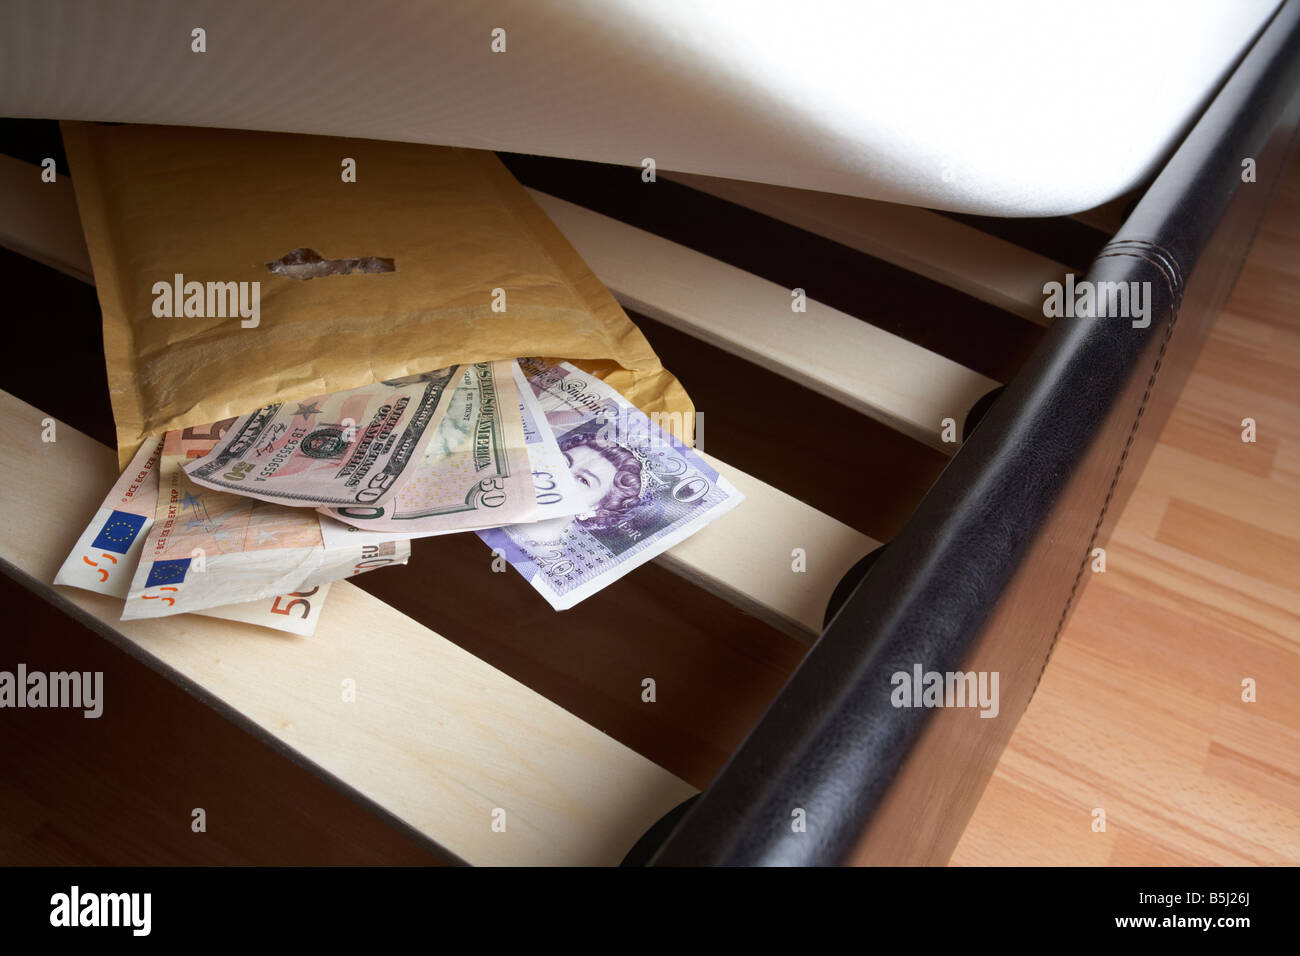 Wad mixte de service de livres sterling Euros et dollars en espèces dans une enveloppe sous le matelas en peluche d'un lit Banque D'Images